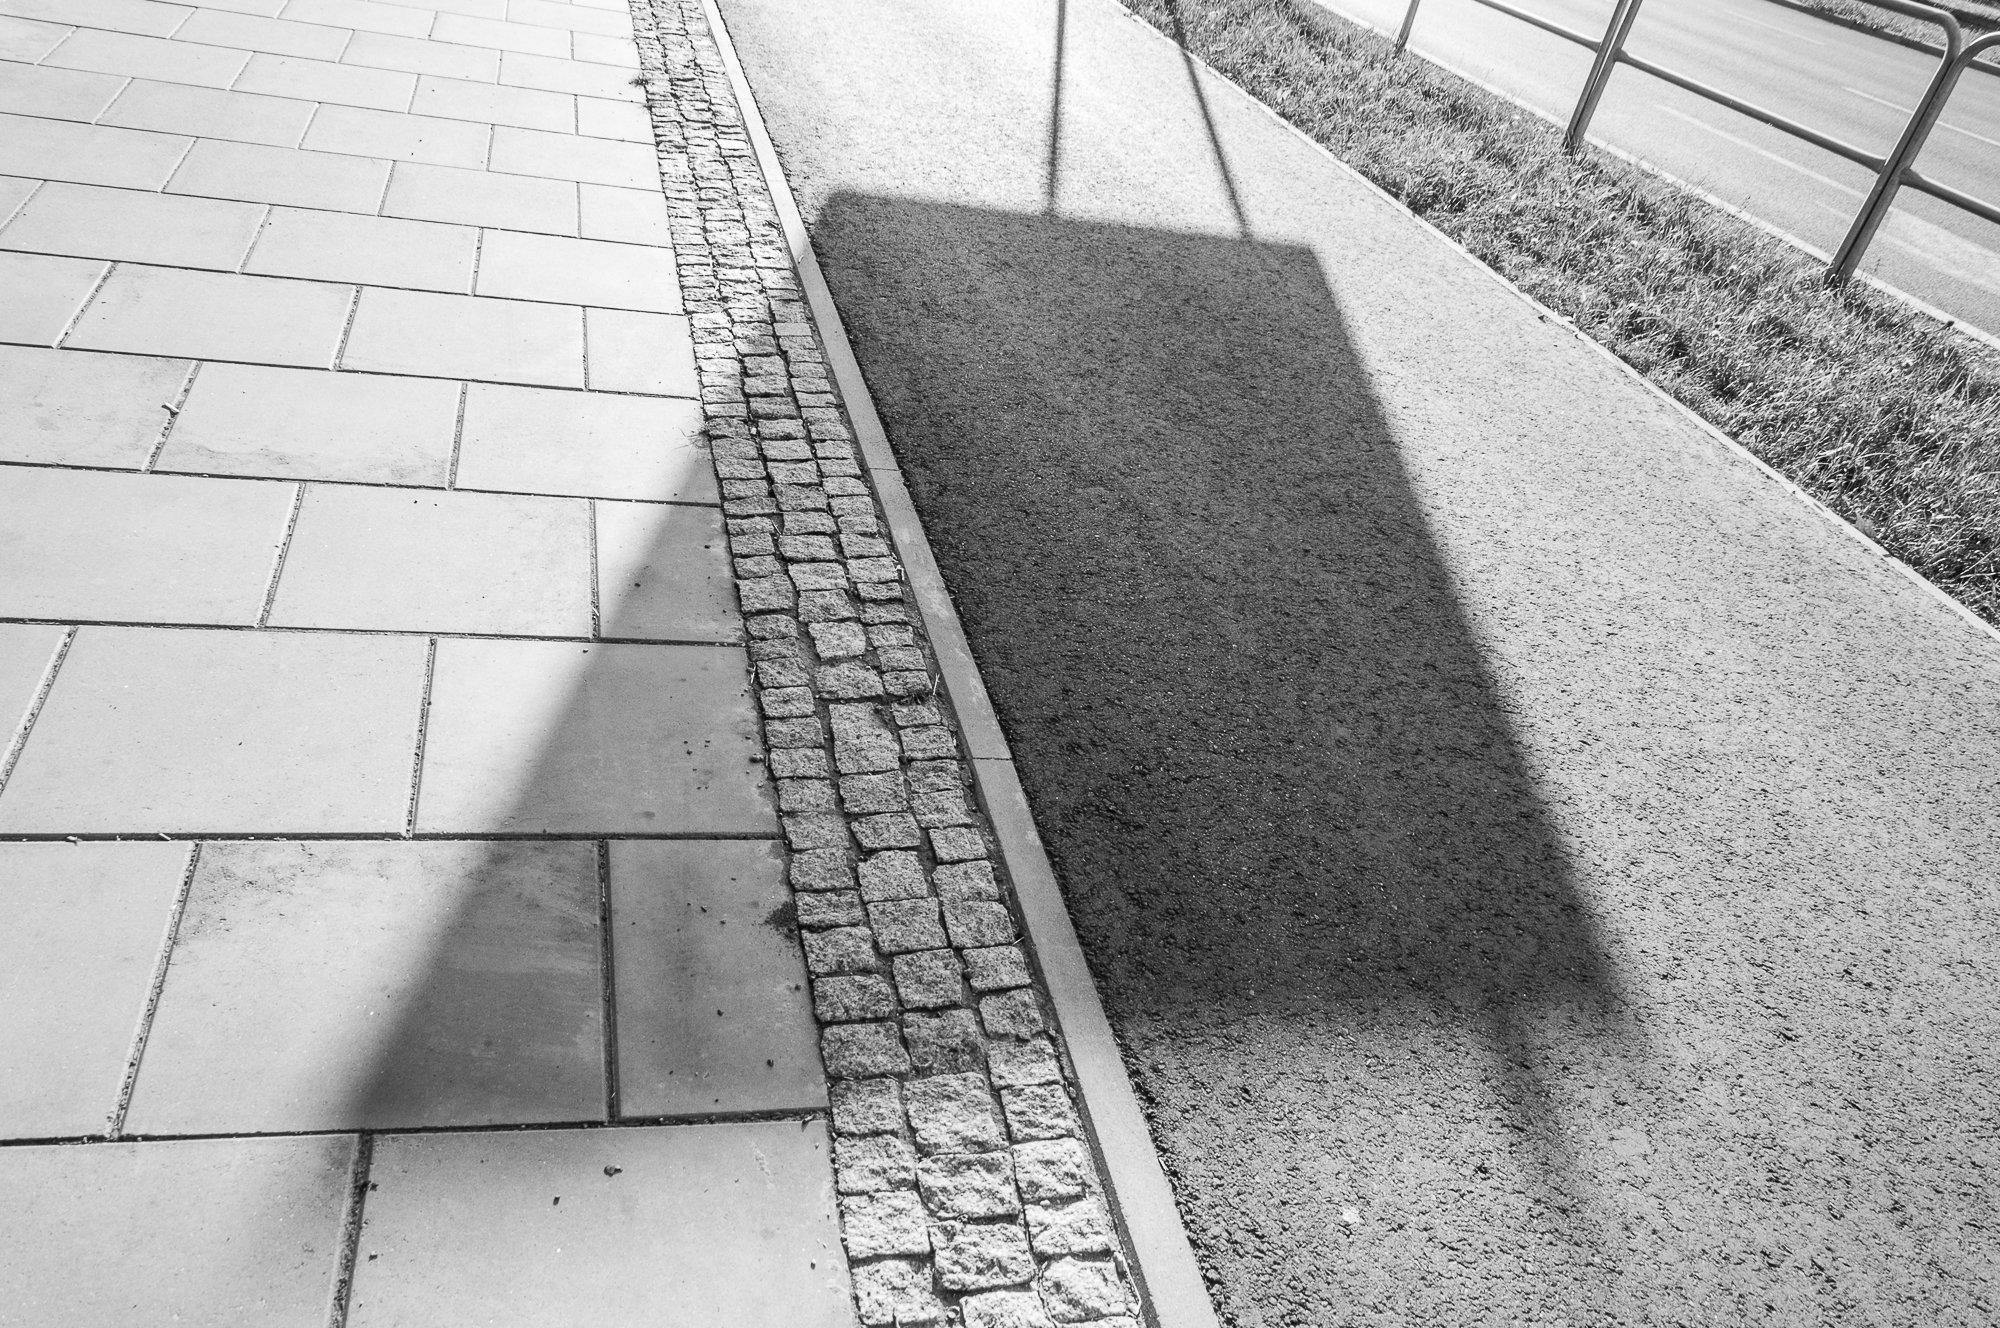 Adam Mazek Photography Warsaw 2020. Post: "Why I take odd photos?" Geometry. Shadow.